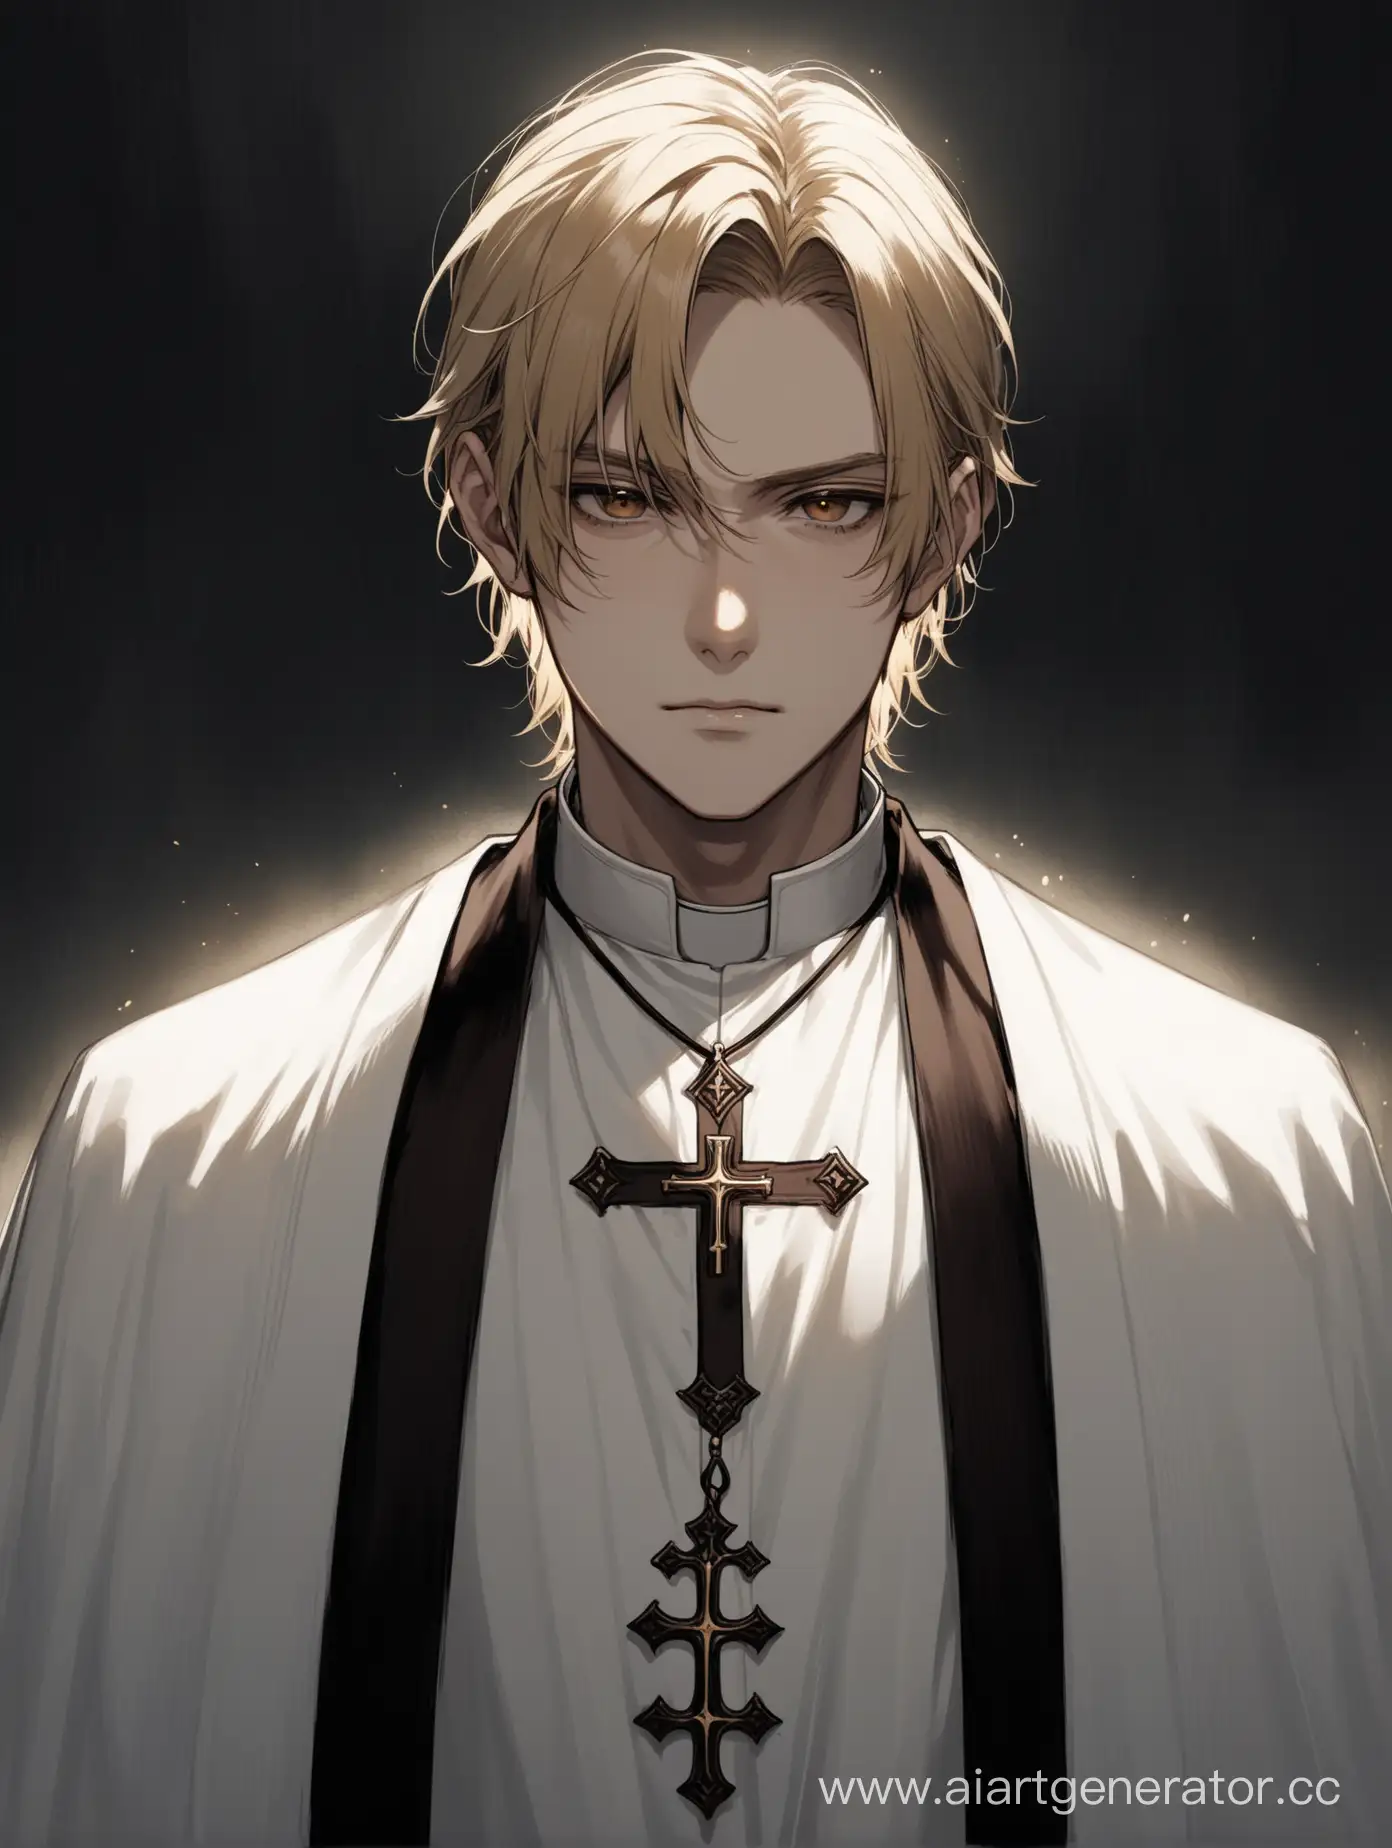 Gloomy-Priest-with-Blonde-Hair-and-Brown-Eyes